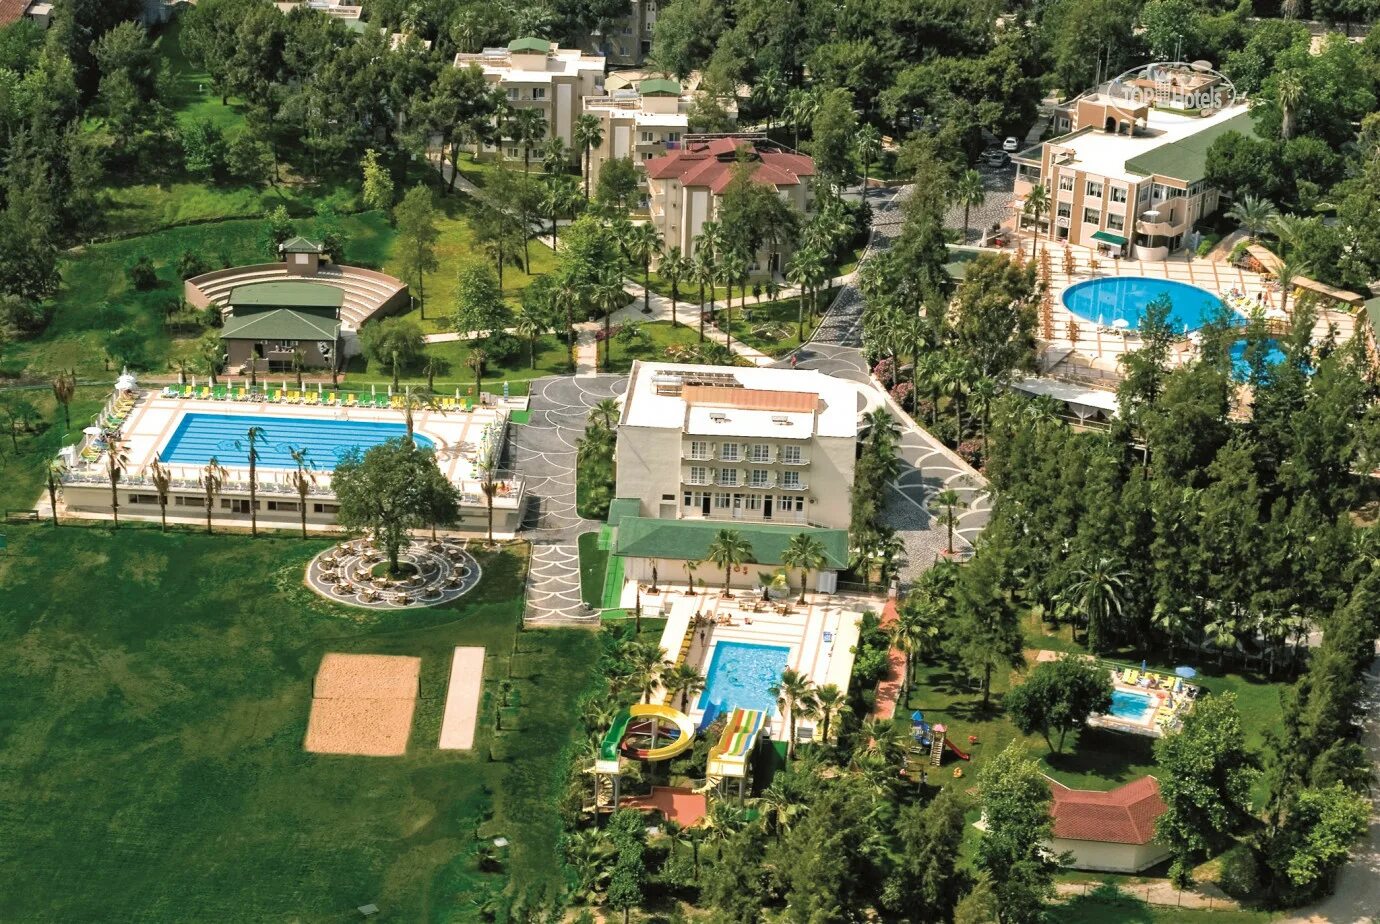 Holiday village 4 отзывы. Турция Club Hotel Sidelya HV-2 4. Club Hotel Sidelya hv2 4 Сиде. Отель Club Hotel Sidelya HV-2. Club Hotel Sidelya HV-2 (Чолаклы).